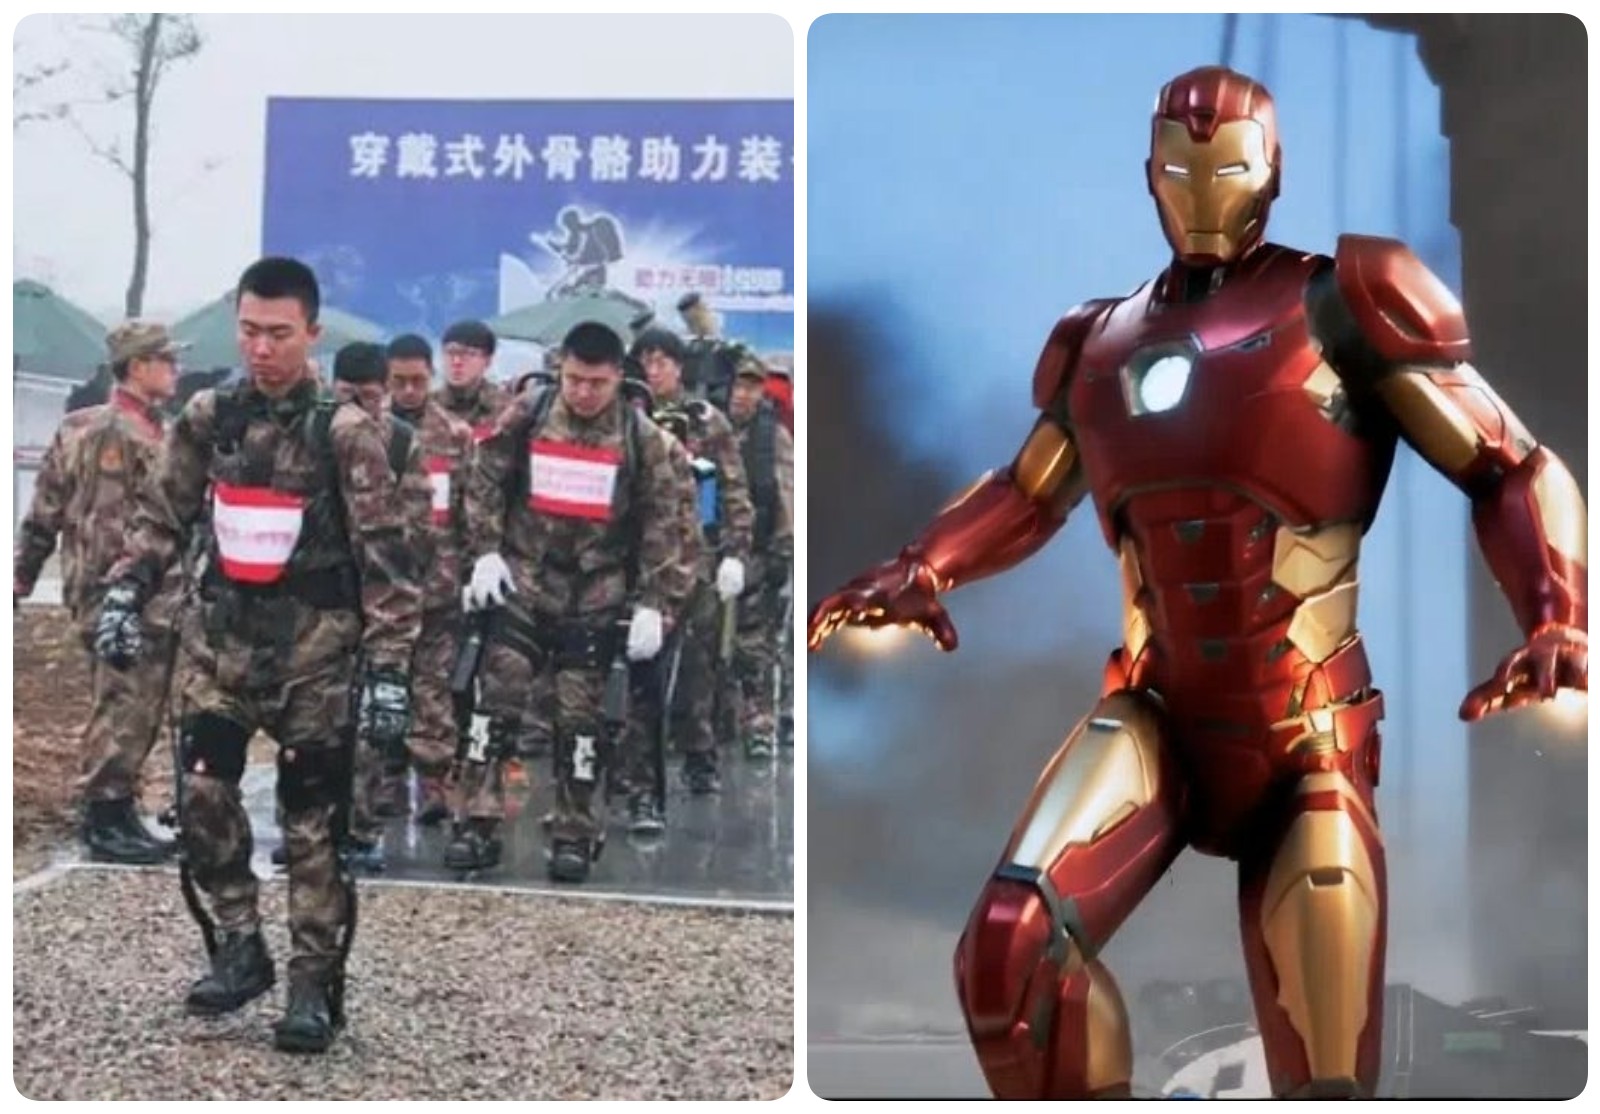 Bộ giáp mới chỉ giúp binh sĩ Trung Quốc mang vác vật nặng chứ không có tác dụng chiến đấu, theo Hoàn cầu. Bên phải là bộ giáp của nhân vật Iron Man trong phim Hollywood.